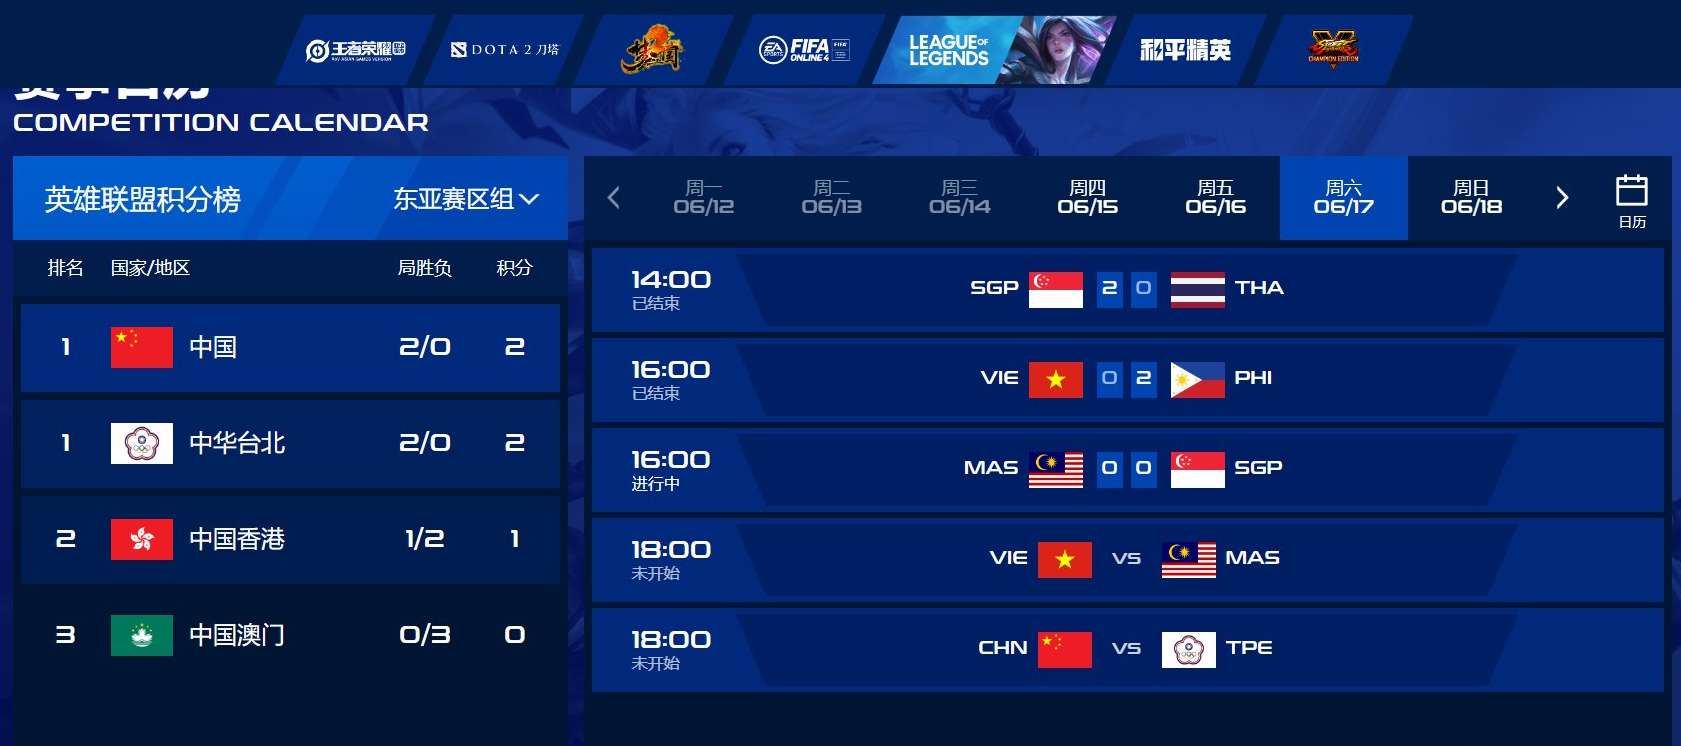 Đội tuyển LMHT Việt Nam bị xử thua 0-2 tại  Road To Asian Games